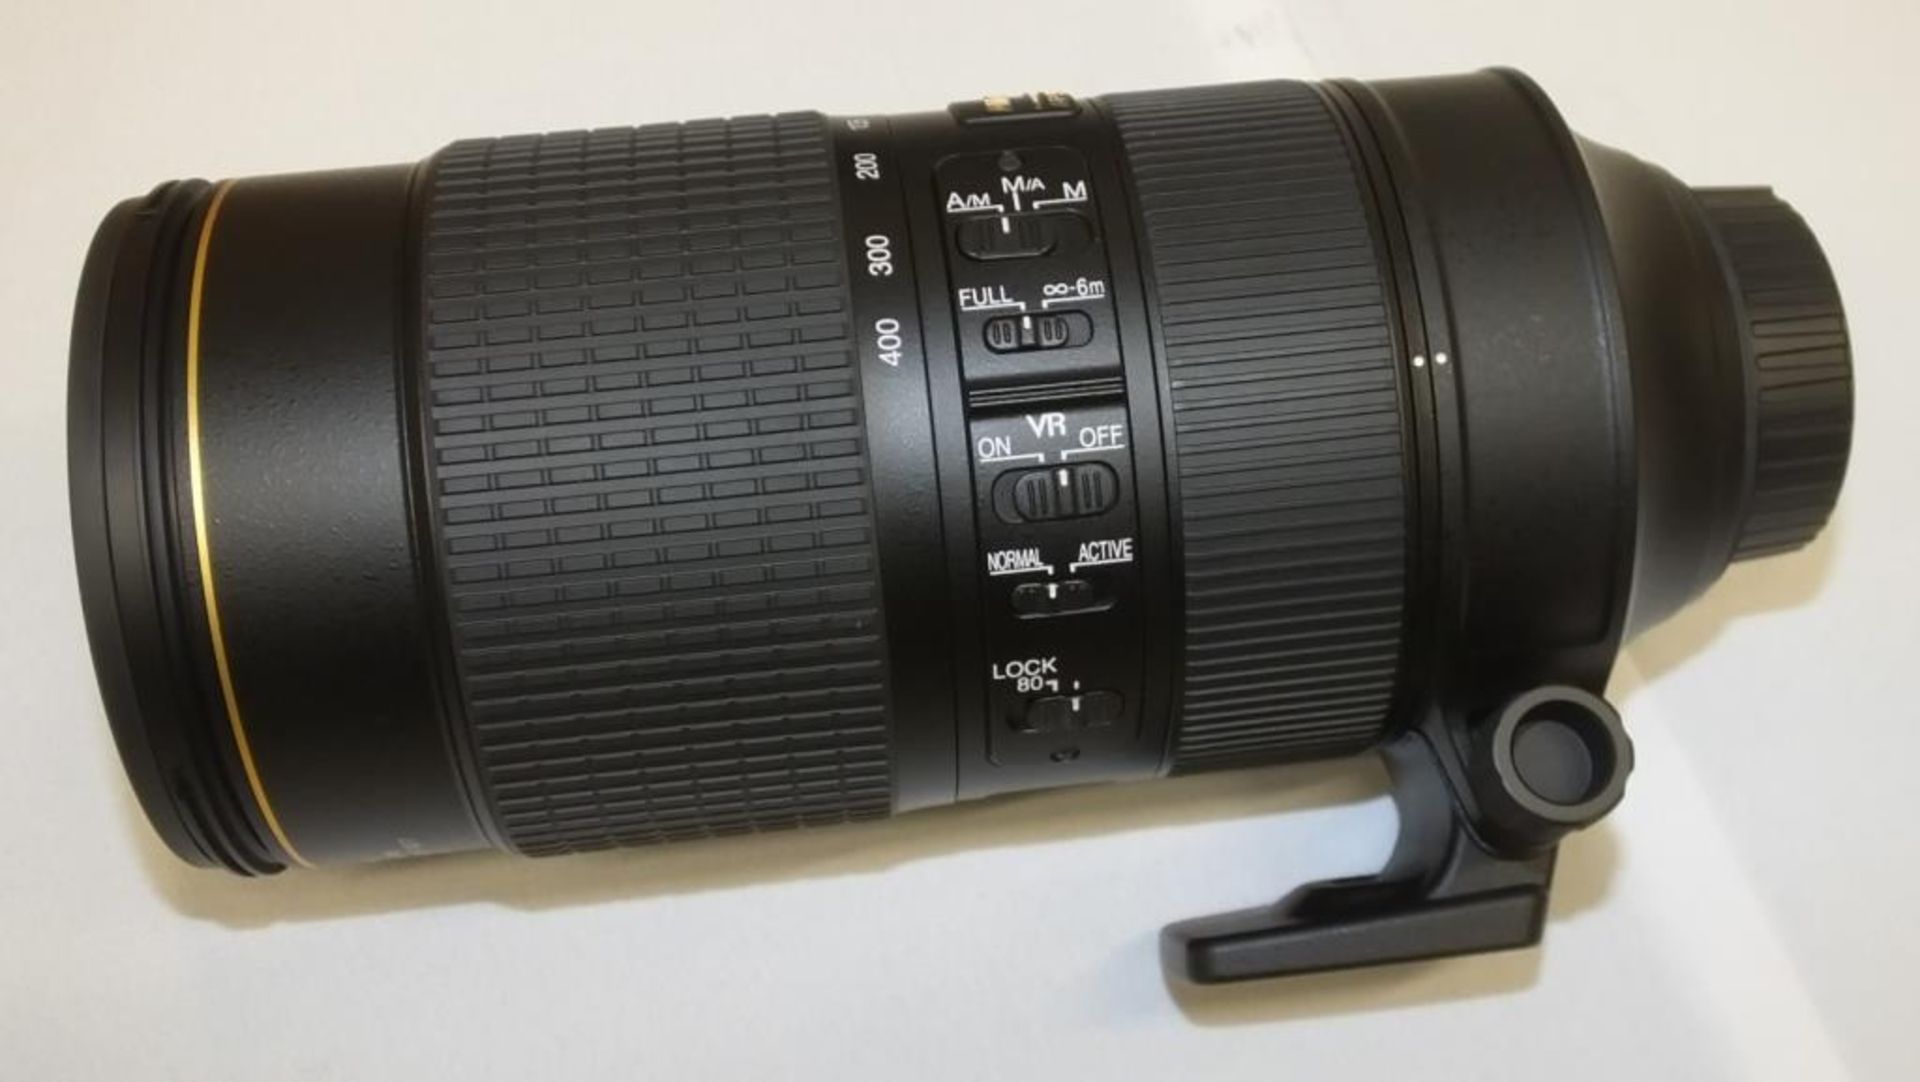 Nikon AF-S Nikkor 80-400mm F/4.5-5.6G ED VR Lens - Serial No. 268963 with Nikon CL-M2 Case - Image 4 of 7